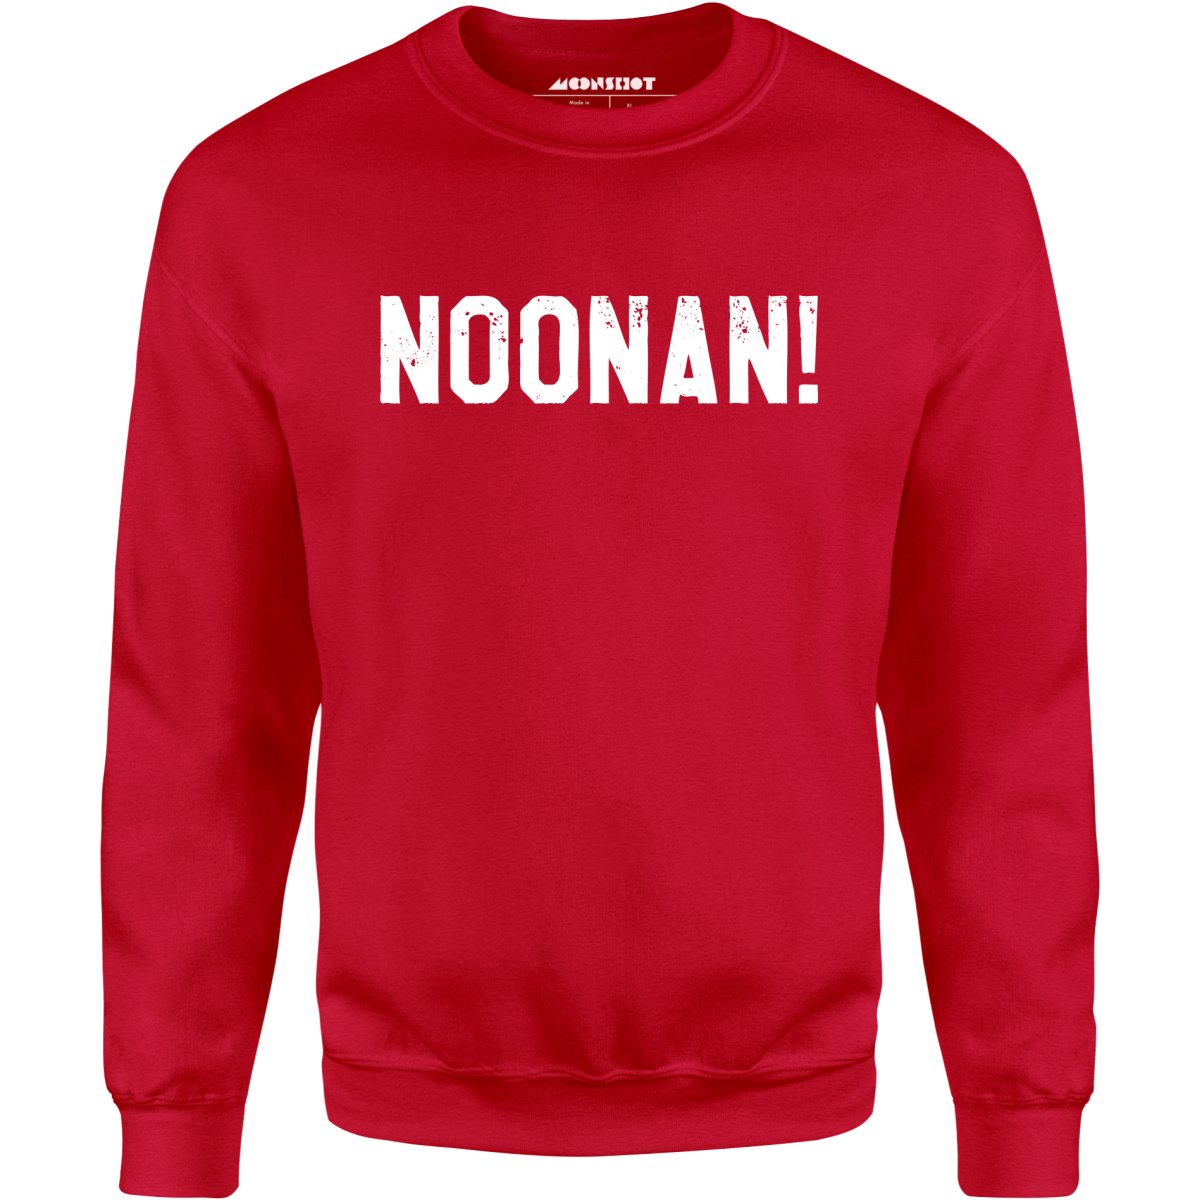 Noonan! - Unisex Sweatshirt